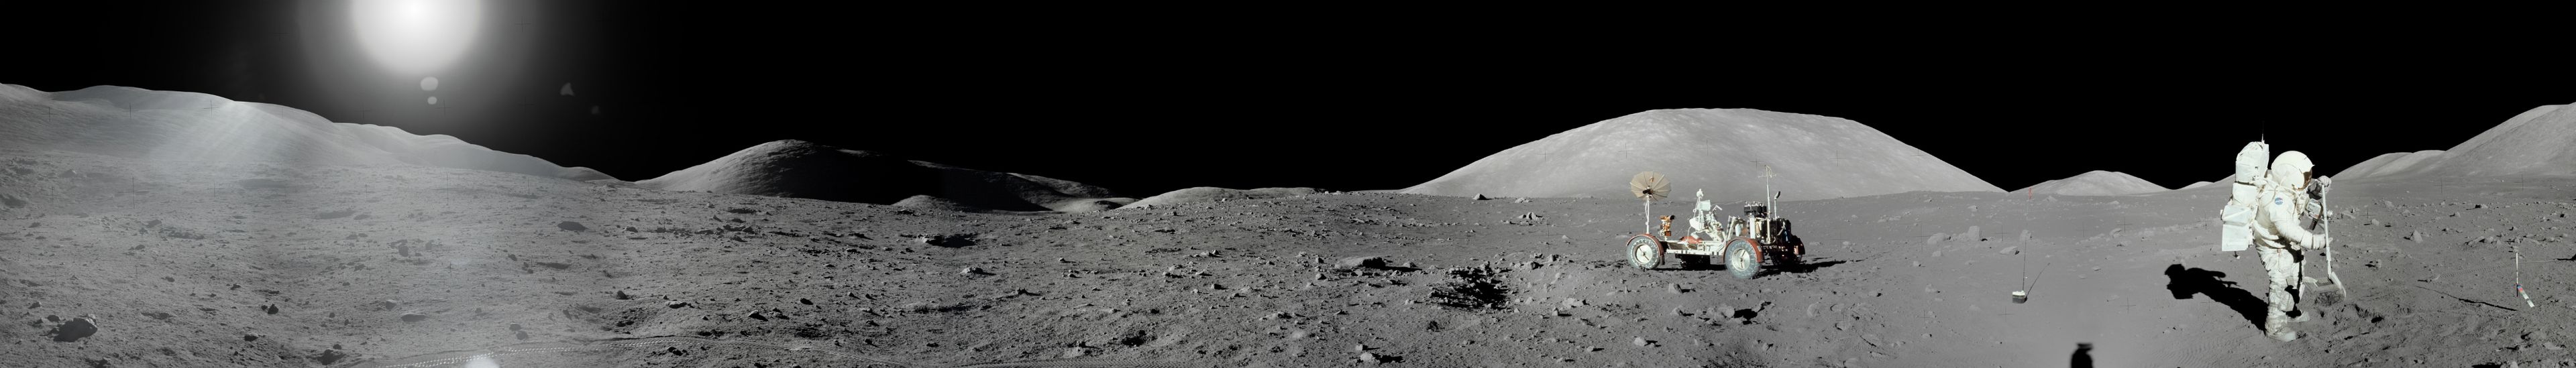 45 aniversario de la misión Apolo 11: Viajes a la luna en videojuegos